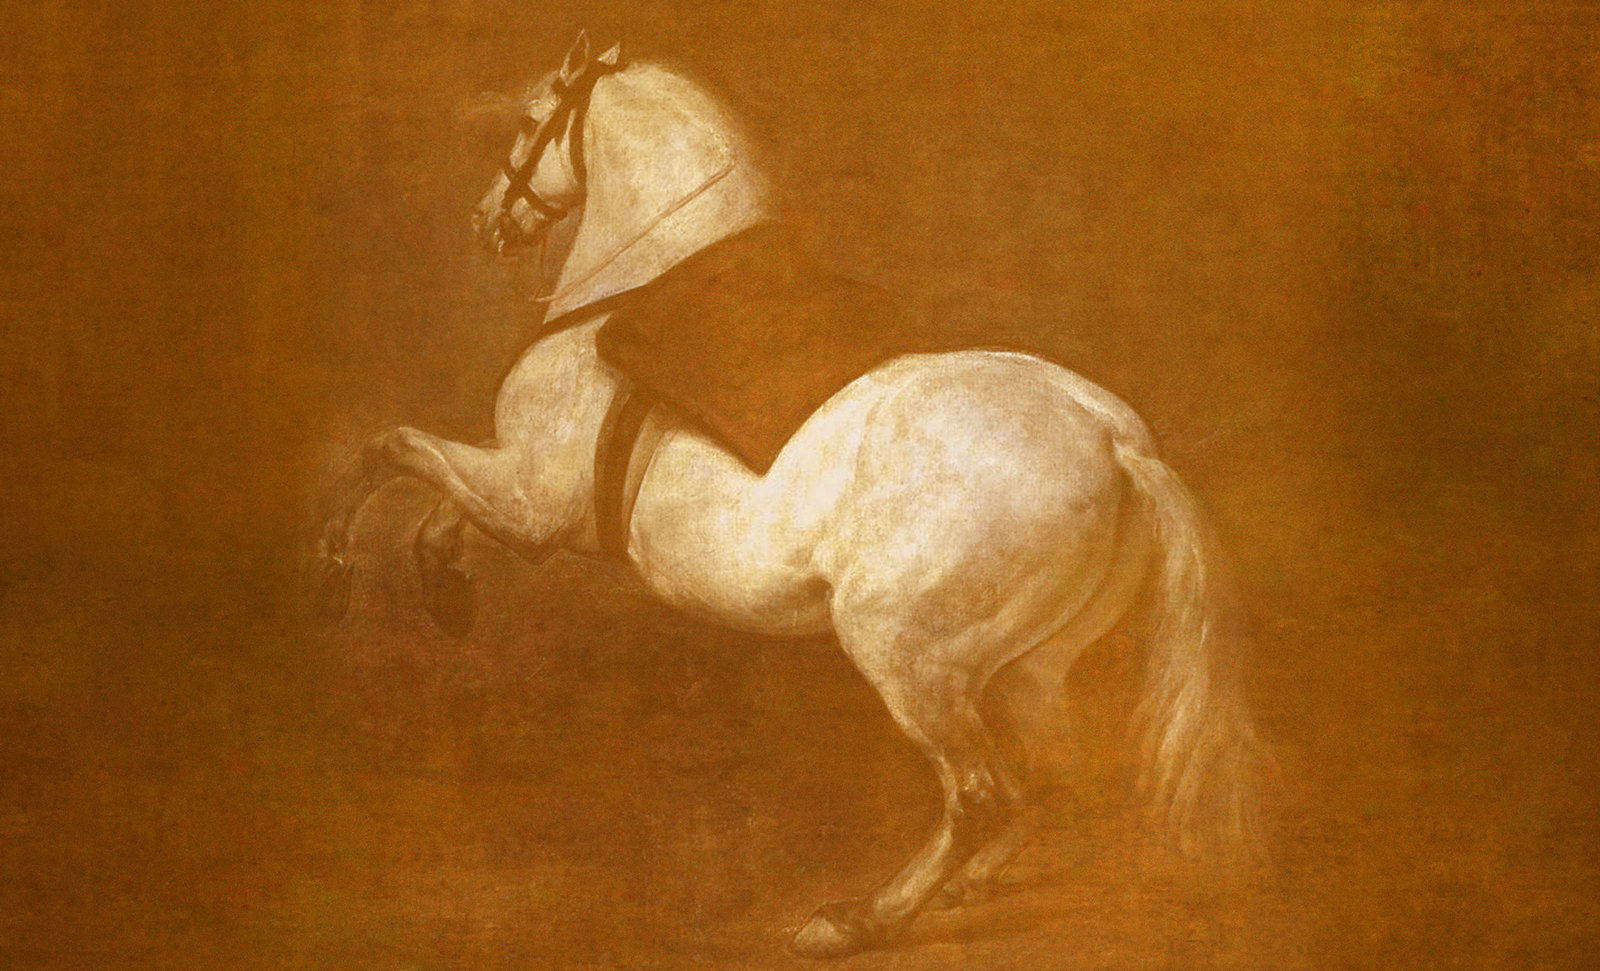 Equitación, descripción de Diego Velazquez (1634), abstracción y reinterpretación de Pablo Picasso (1961).